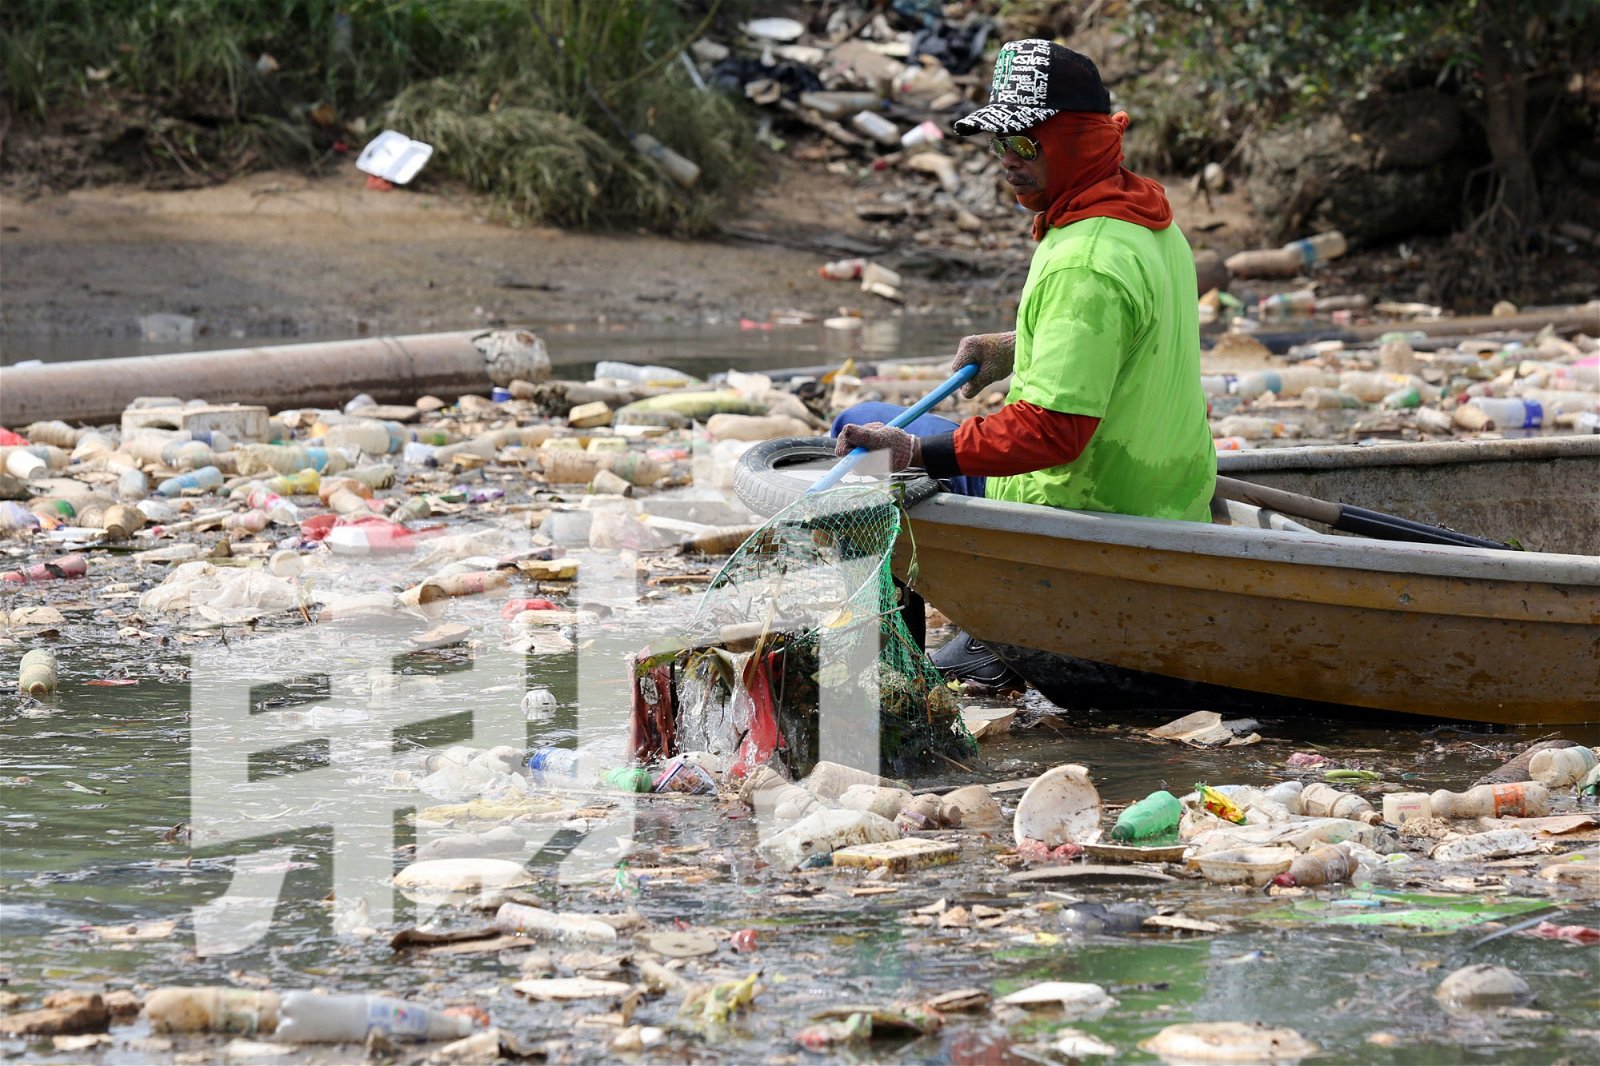 地不佬河漂流著许多垃圾，包括塑料瓶、塑料袋和厨馀等人为的垃圾，造成河流生态环境严重被破坏。可谓名副其实的“垃圾河”，就连志工乘船帮忙清理河中垃圾时，船只驶过河面，出现触目惊心的垃圾河。非政府组织过去几年经常举办清理河流垃圾活动，希望能在减少河流的垃圾同时，提高民众对于保育河流的醒觉意识。如今，地不佬河的垃圾情况已较数年前有所好转，但污染的情况仍然存在，2018年环境局报告中，依然把它列为柔州最污染的河流之一。（摄影：刘维杰）